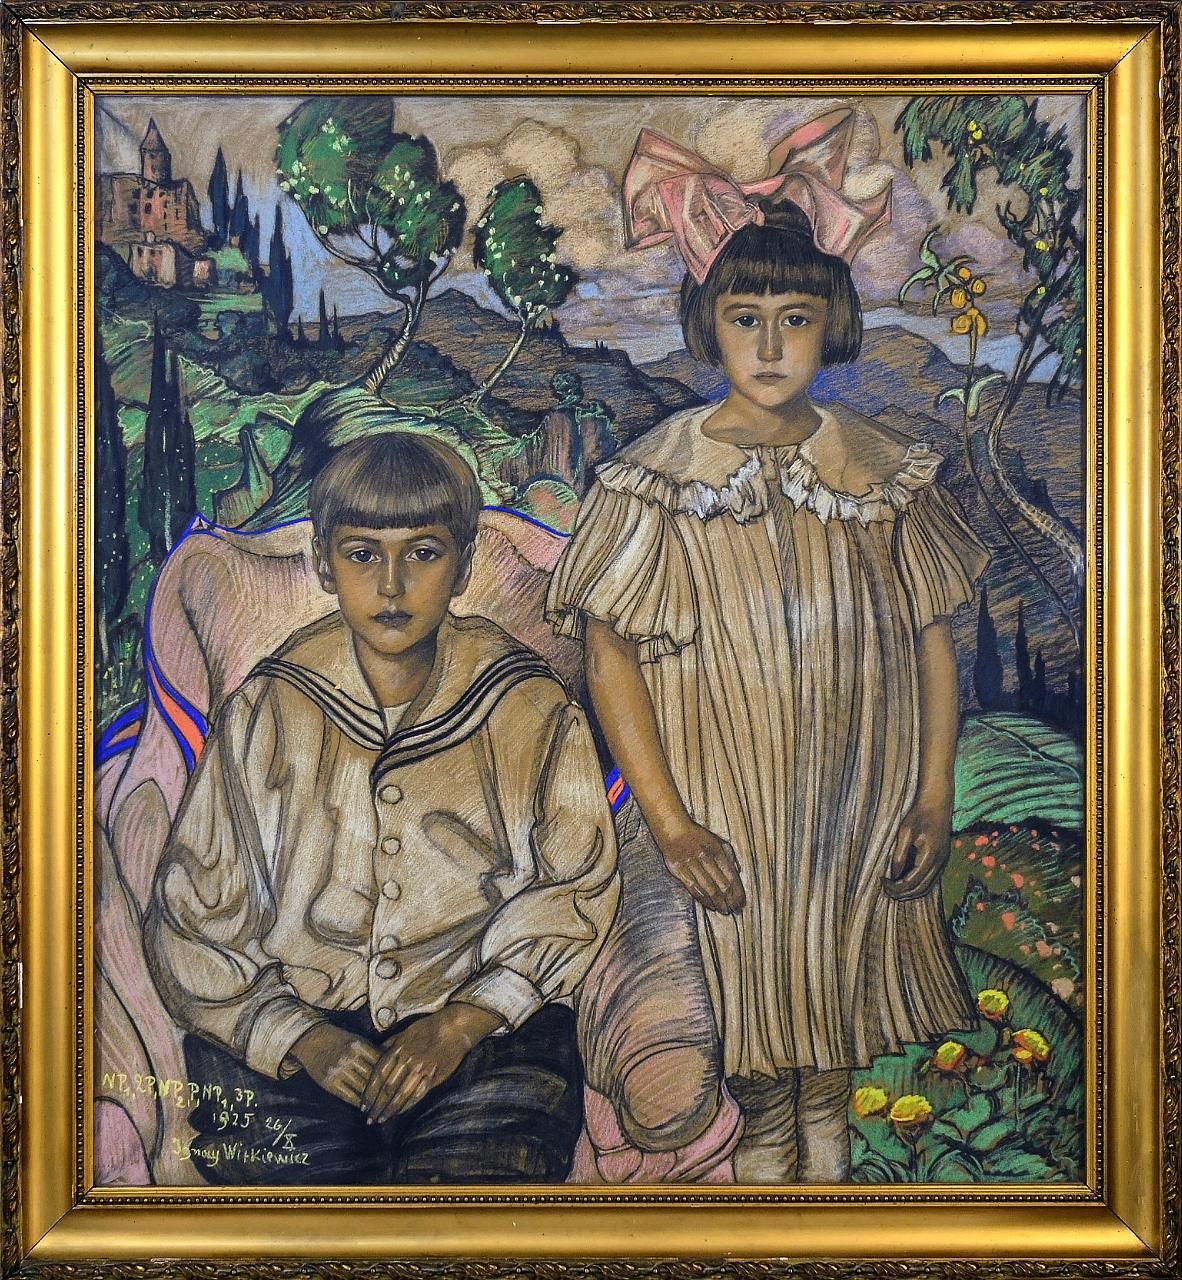 Portret namalowany przez Witkacego przedstawia dwoje dzieci: chłopiec siedzi na fotelu, dziewczynka stoi obok niego. W tle widoczne drzewa i góry.